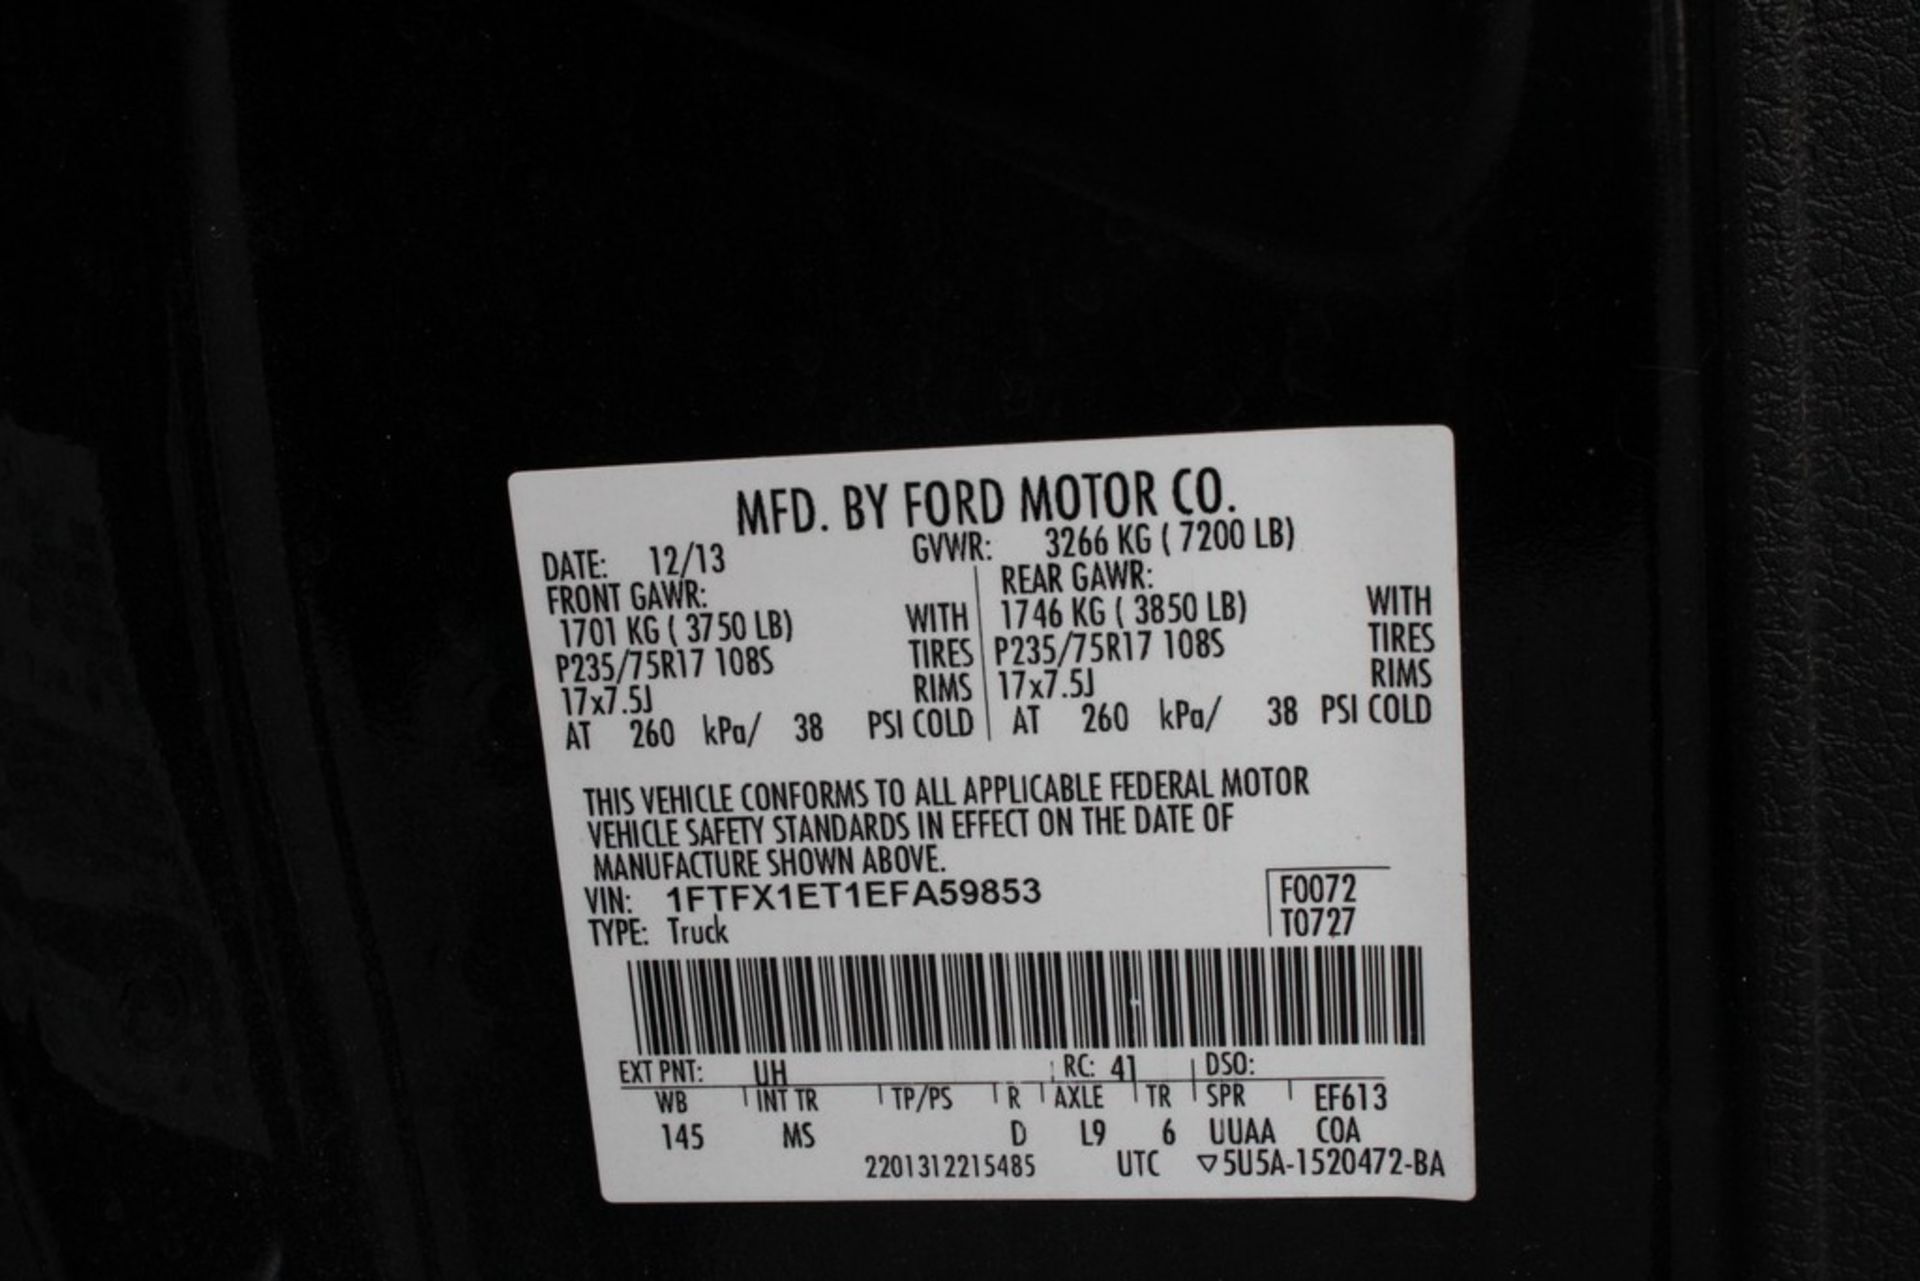 2014 FORD F-150 FX4 SUPERCAB, 6.5FT BED, 3.5L V6 TURBO, 4WD, VIN 1FTFX1ET1EFA59853, 187,735 MILES - Image 12 of 12